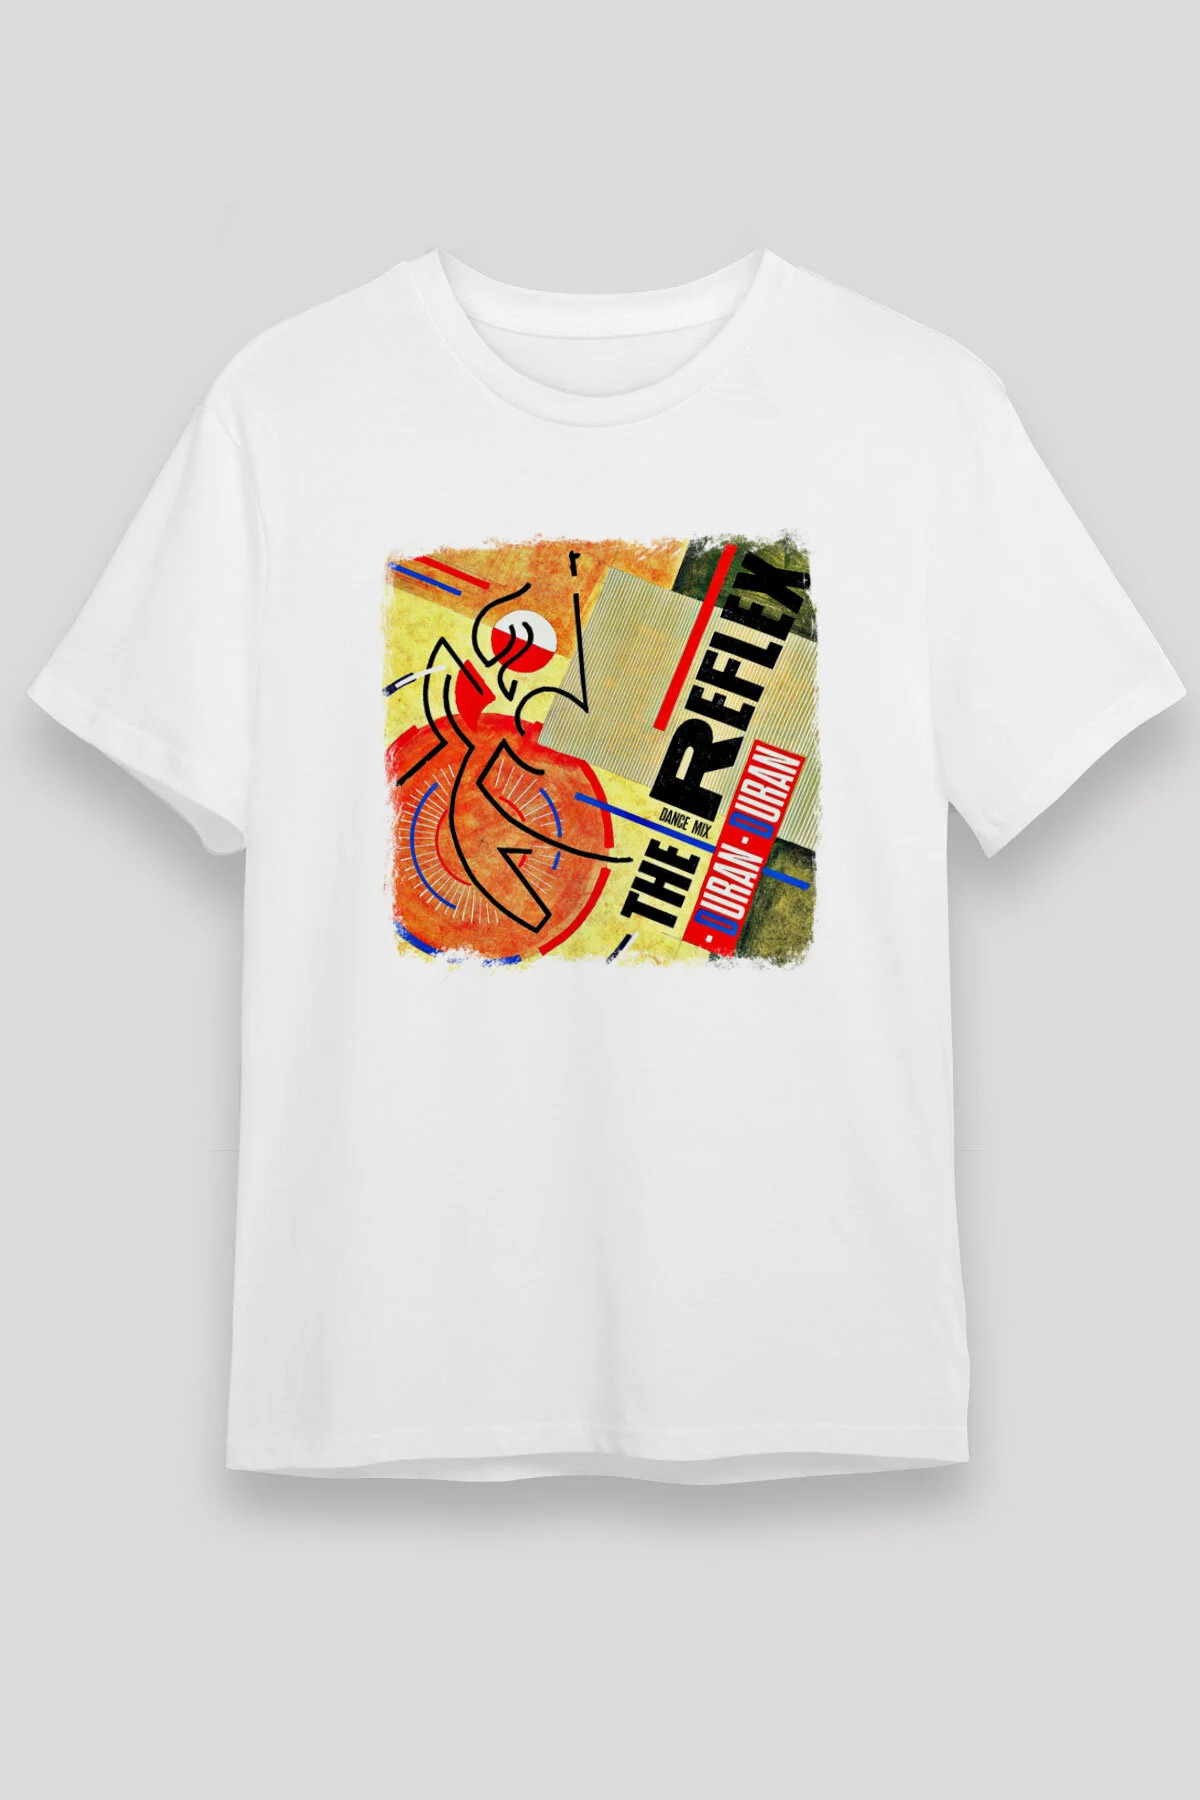 Duran Duran  T shirt , Music Band ,Unisex Tshirt  12